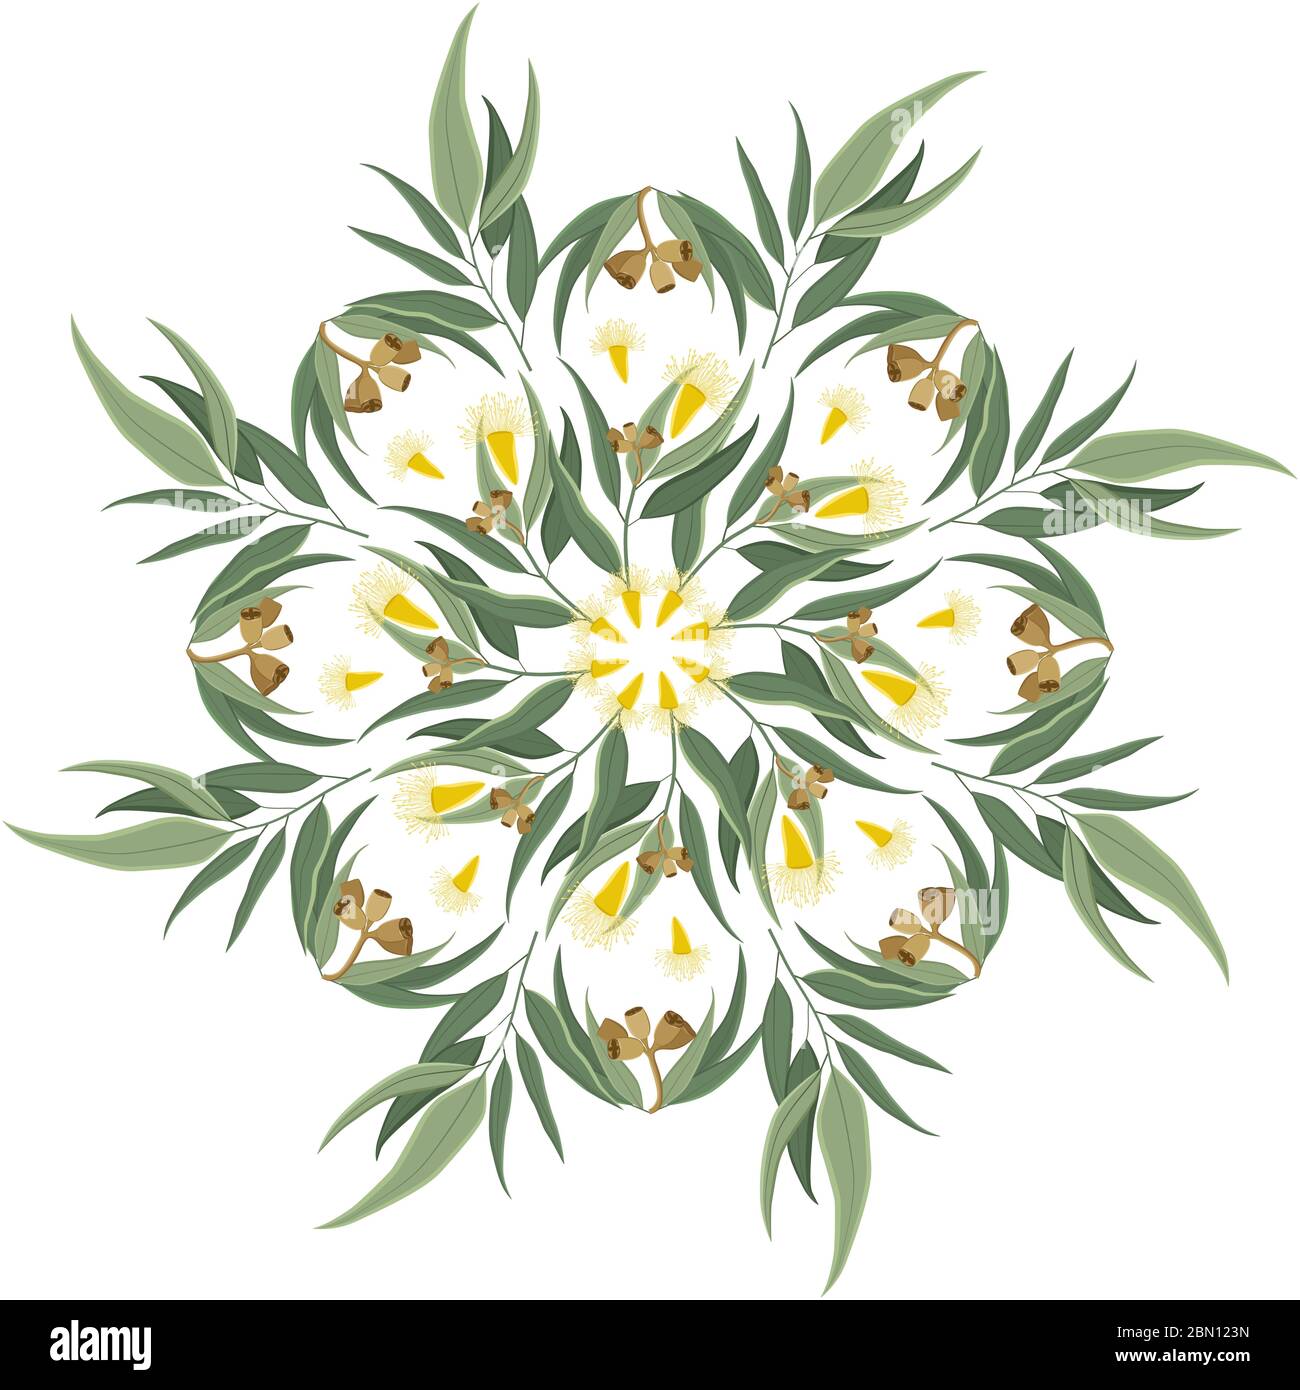 Décoration ronde abstraite, mandala avec feuilles d'eucalyptus, graines et fleurs. Motif floral circulaire, motif isolé sur fond blanc Illustration de Vecteur